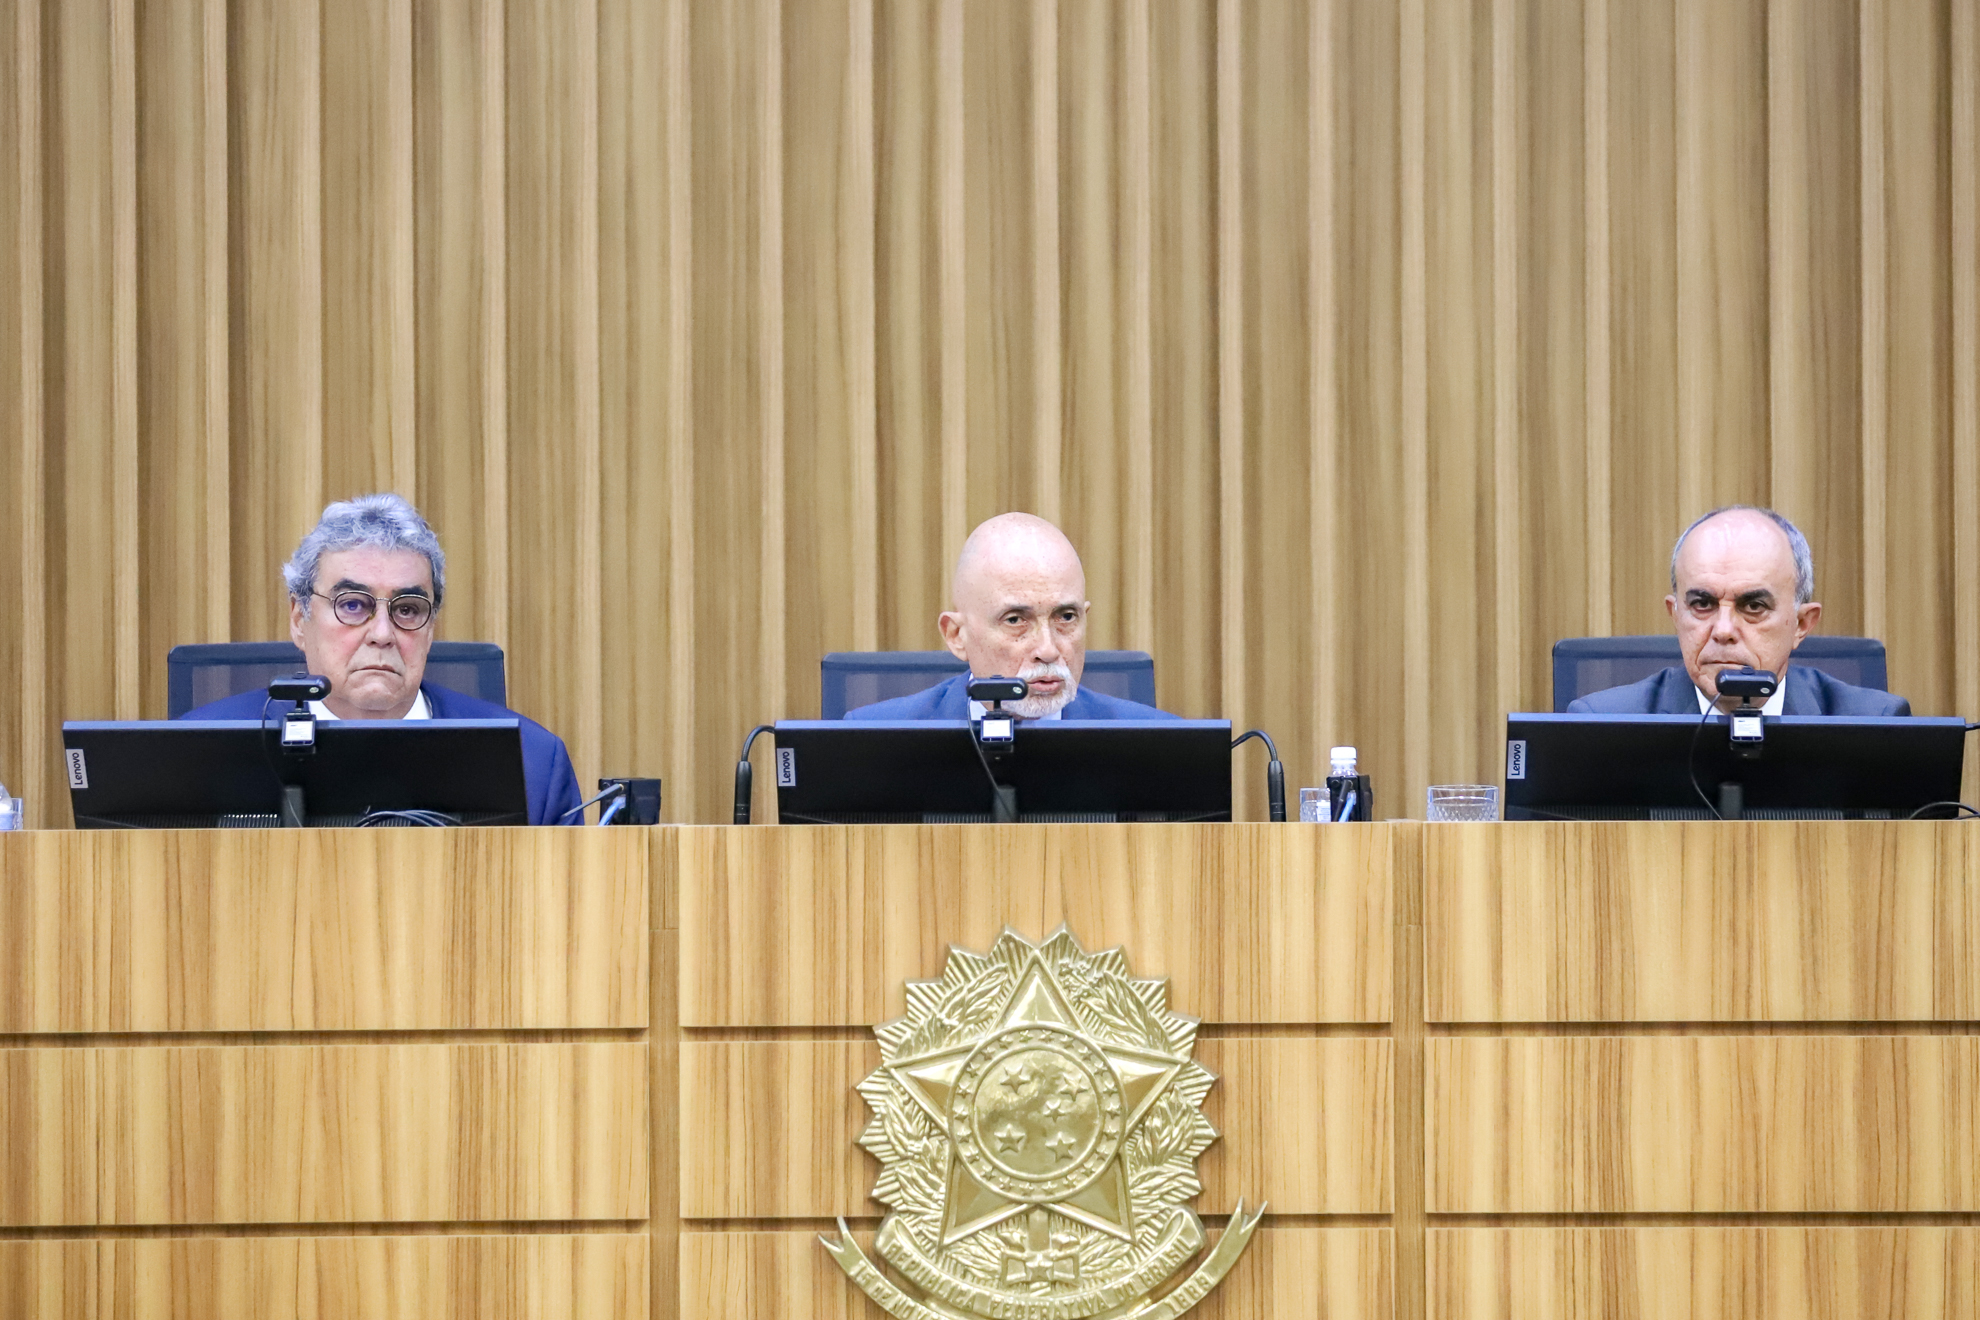 presidente Samuel está sentado à mesa alta, no centro, falando ao microfone, com os ministros Aloysio Veiga à sua esquerda, e Claudio Brandão, à direita